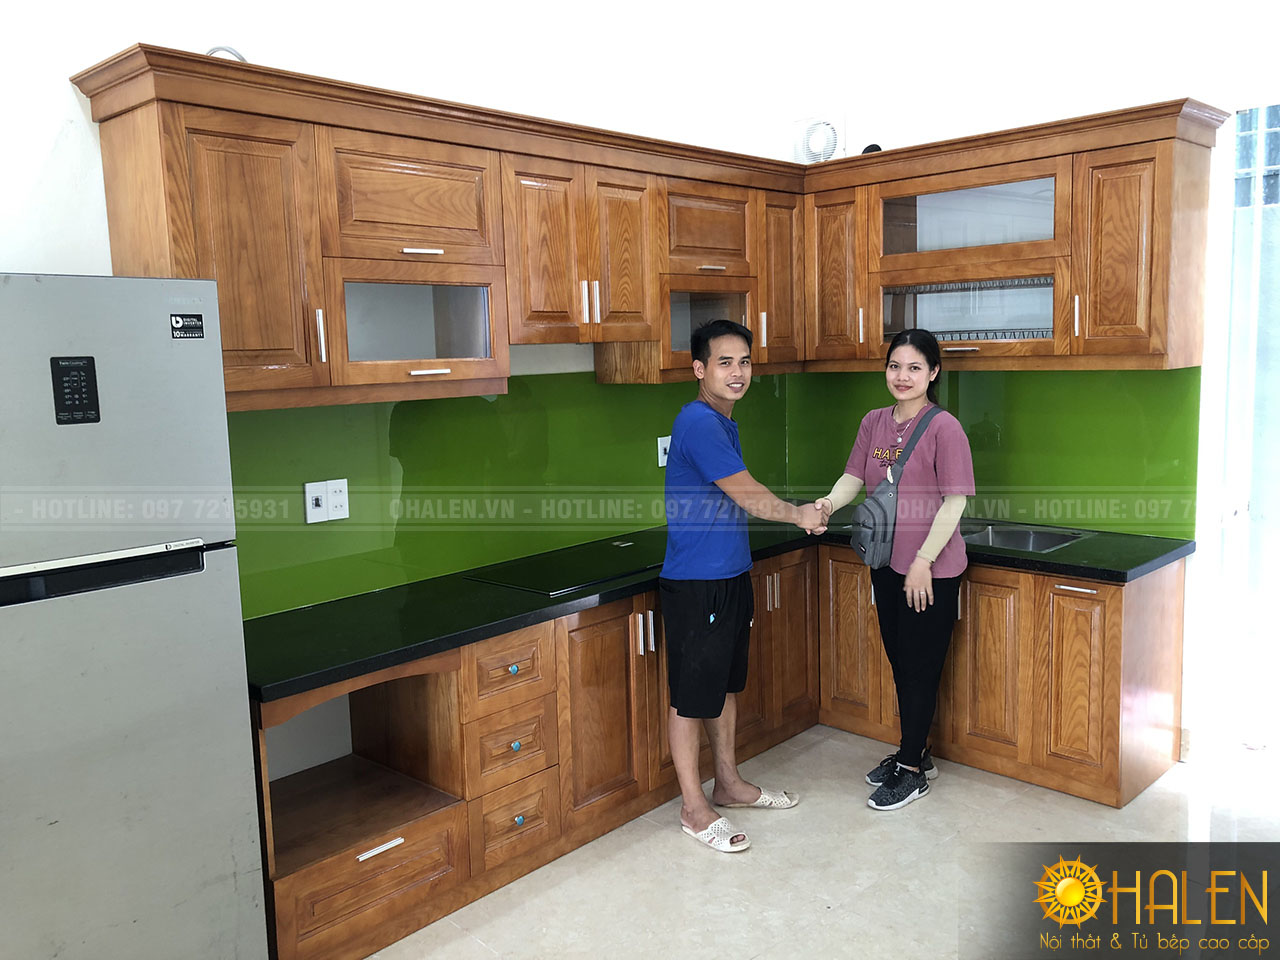 Hình ảnh khách hàng hài lòng với sản phẩm tủ bếp kính màu xanh lá cây của nội thất OHALEN